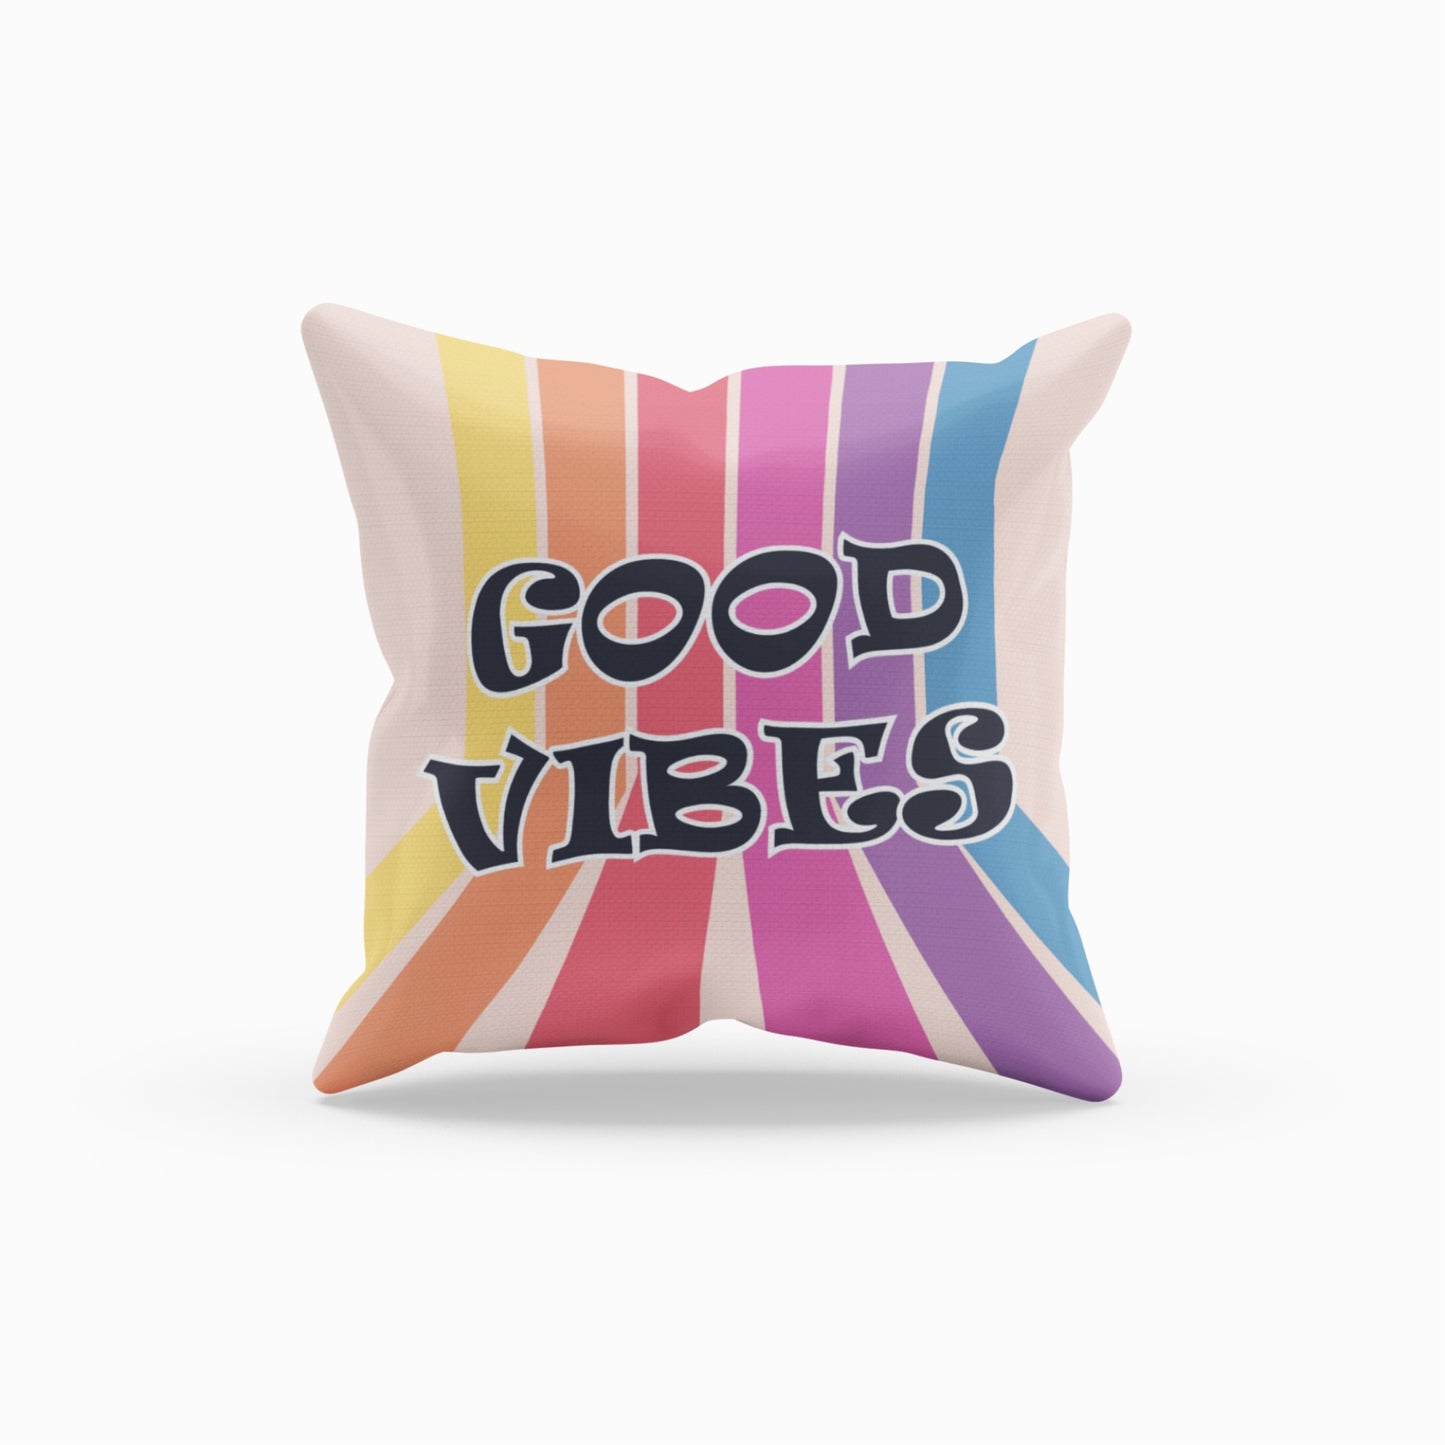 Positive Energy Throw Pillow with Rainbow